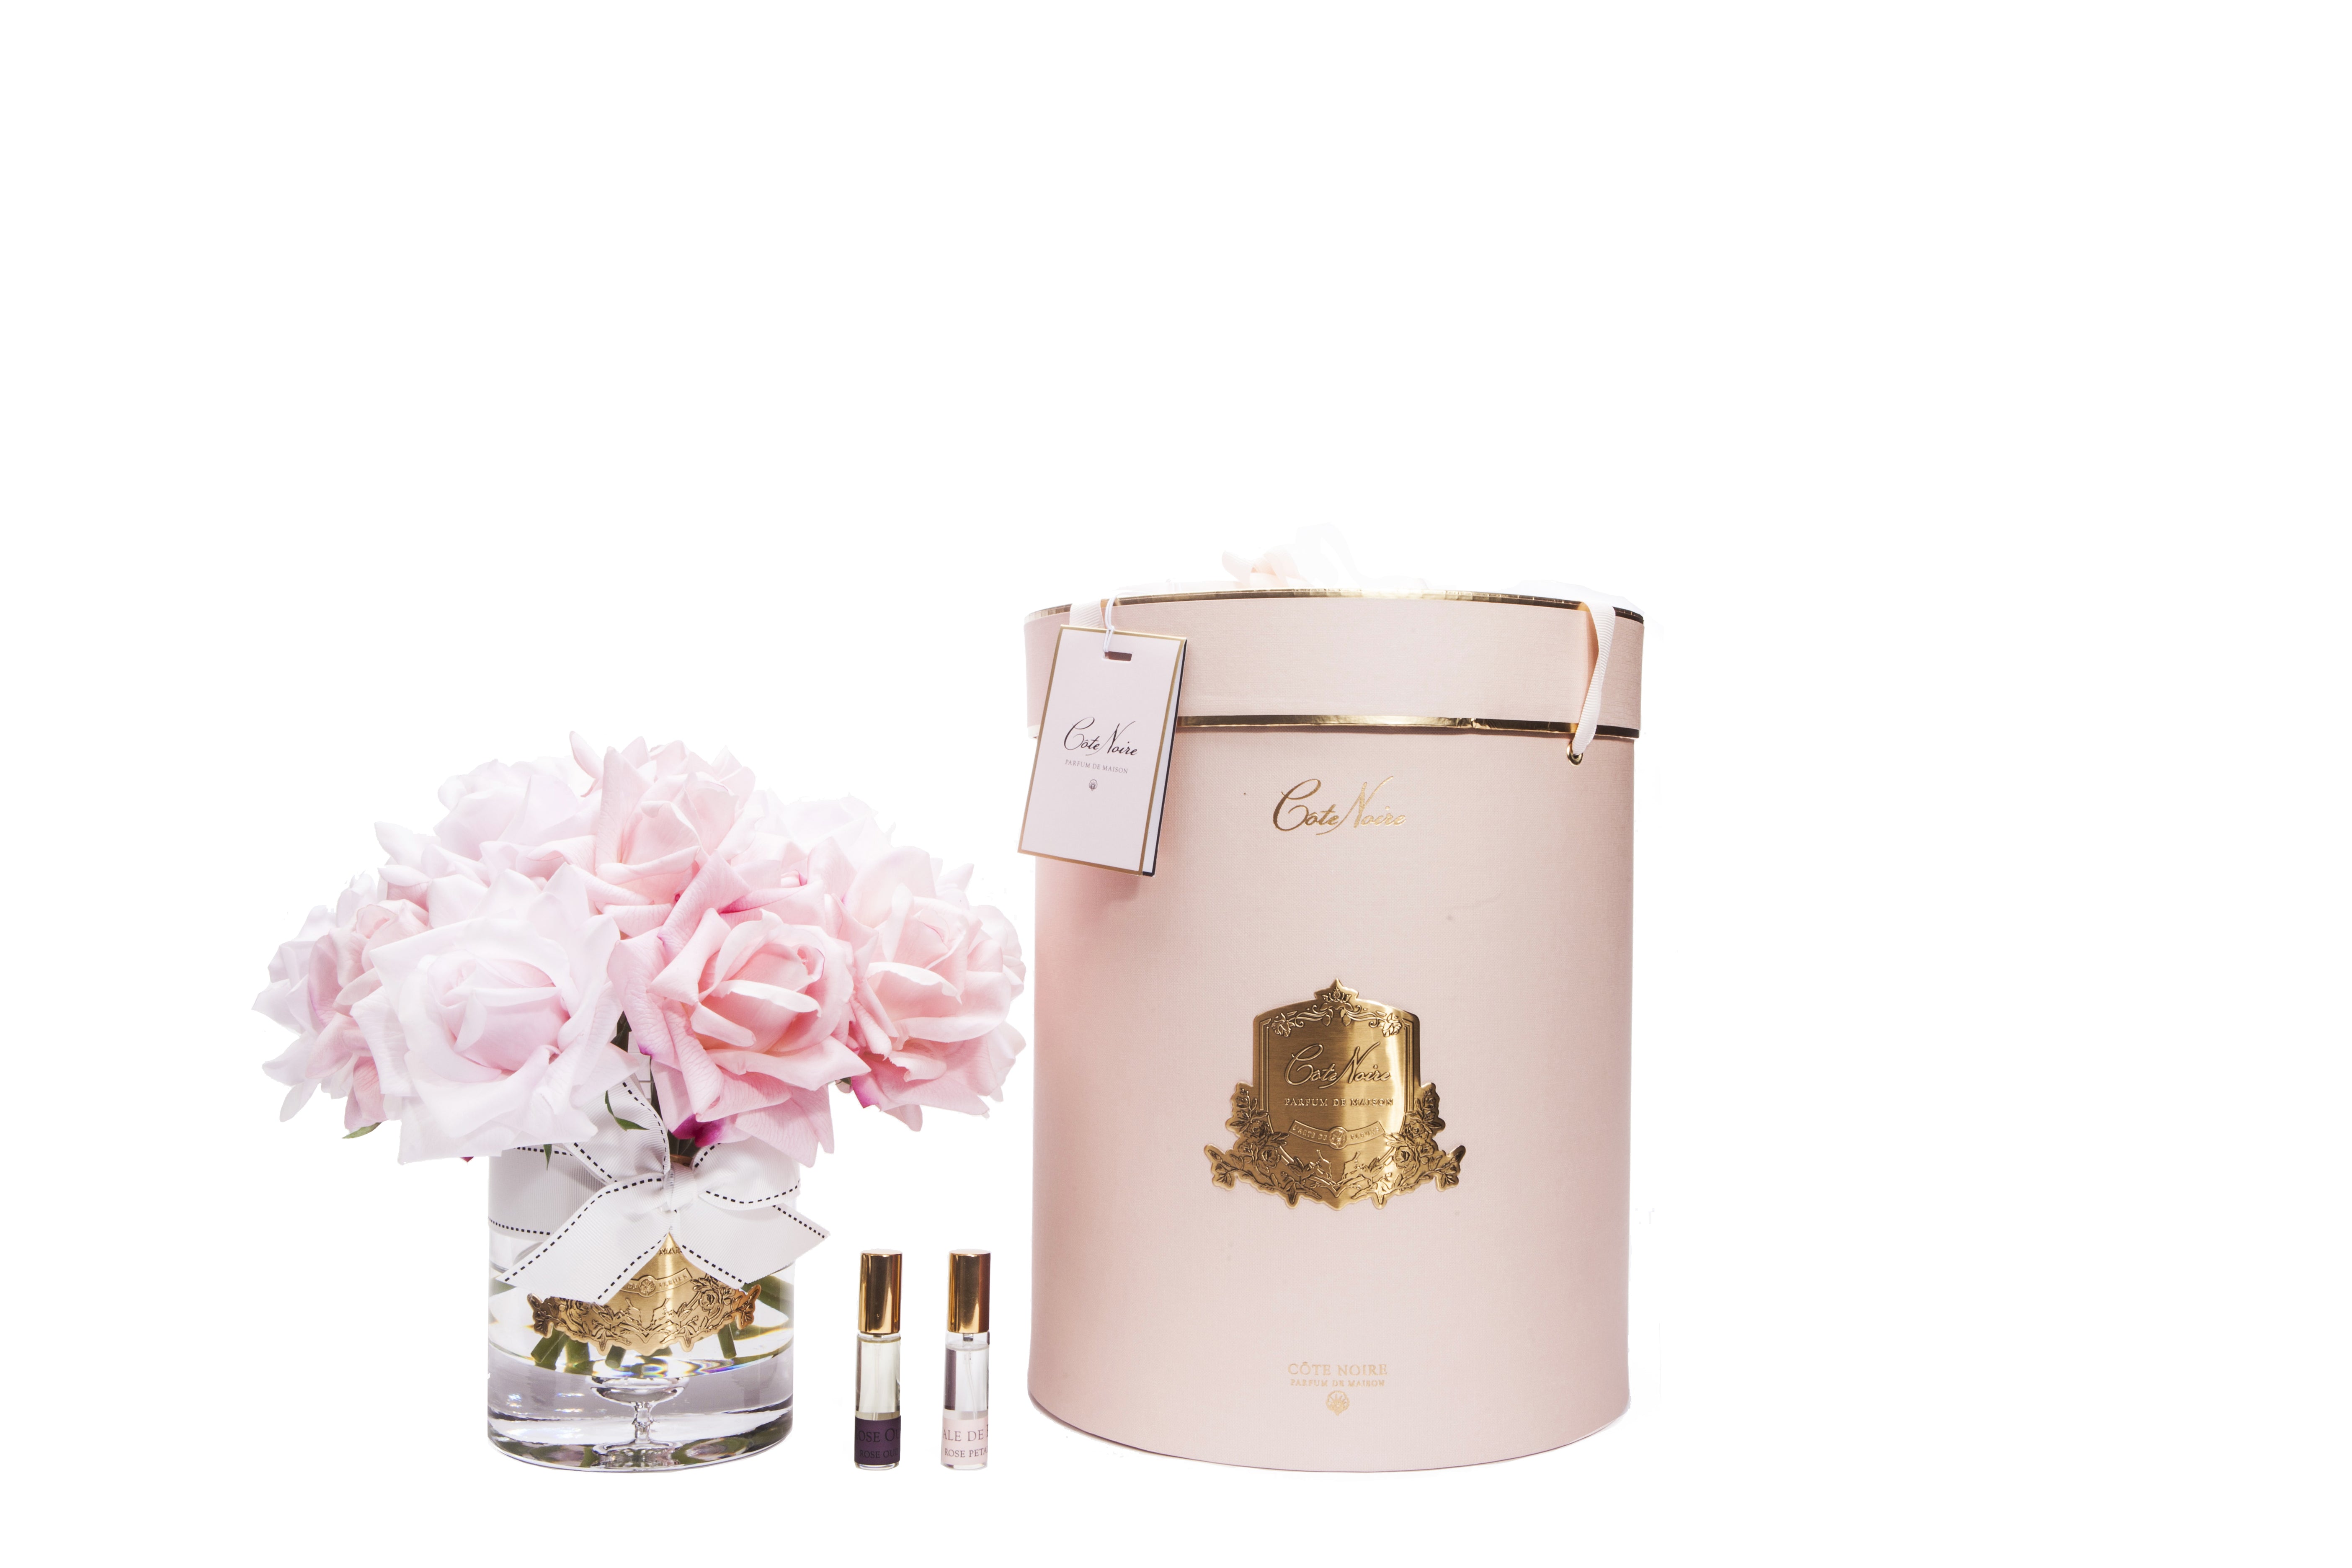 13 pinke rosen arrangiert in einer edlen glasvase, zwei parfumsprays und eine luxurioese runde pinke geschenkbox.